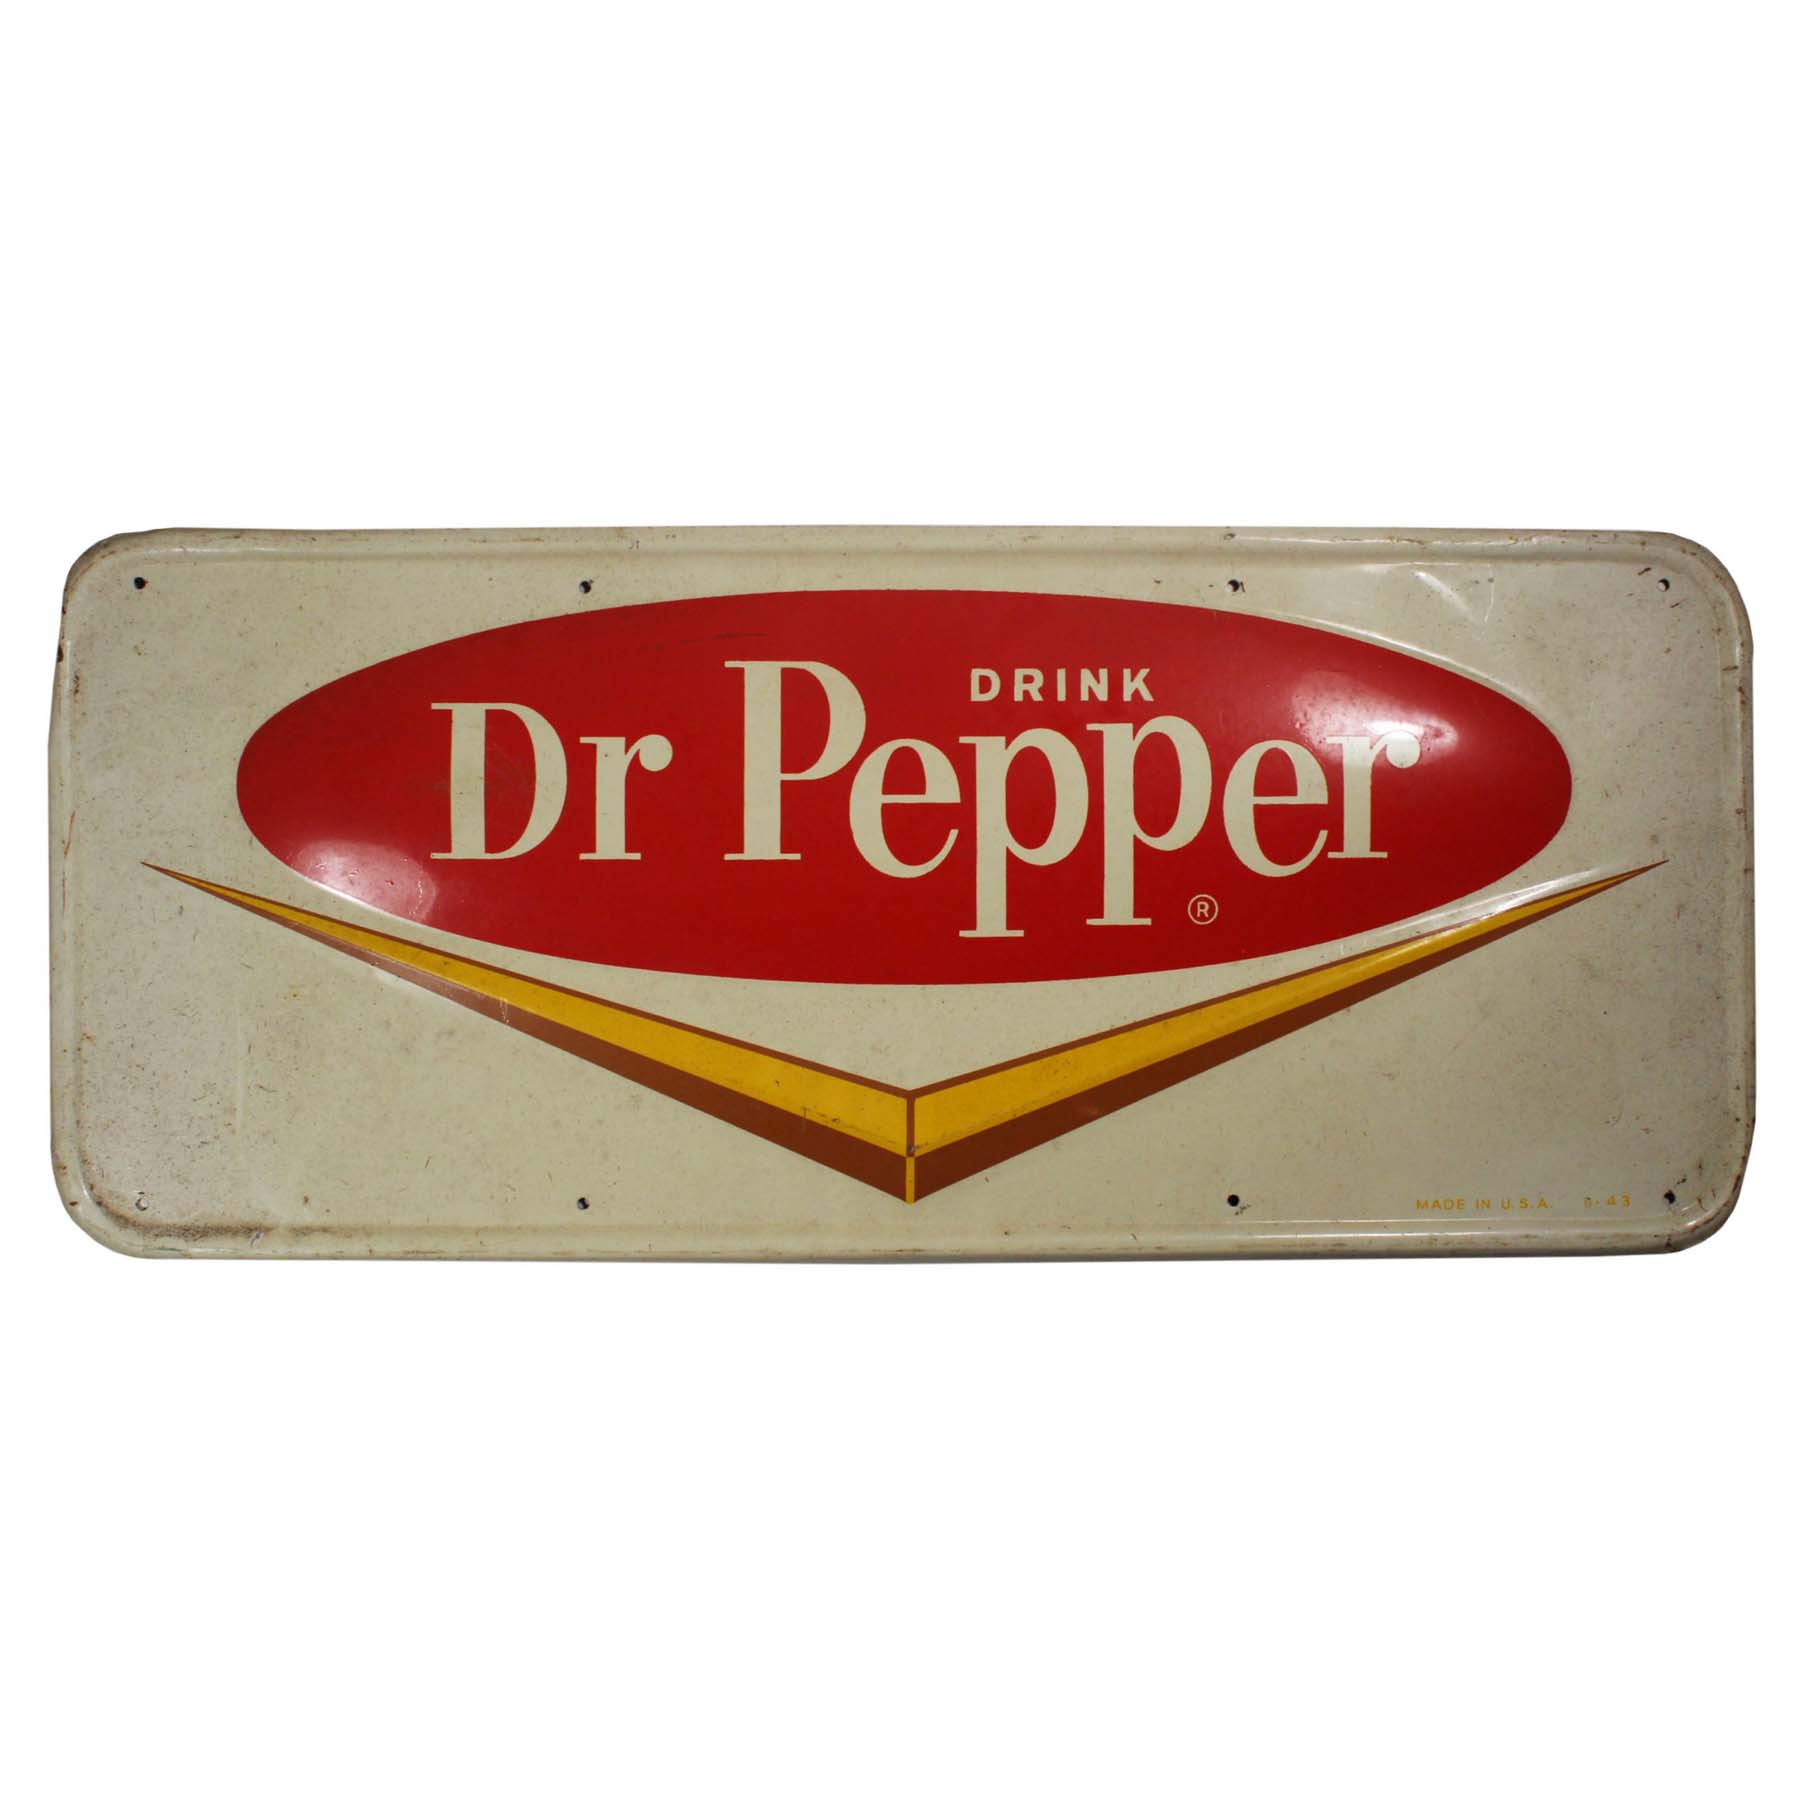 SOLD Vintage “Drink Dr. Pepper” Sign, c. 1943-0